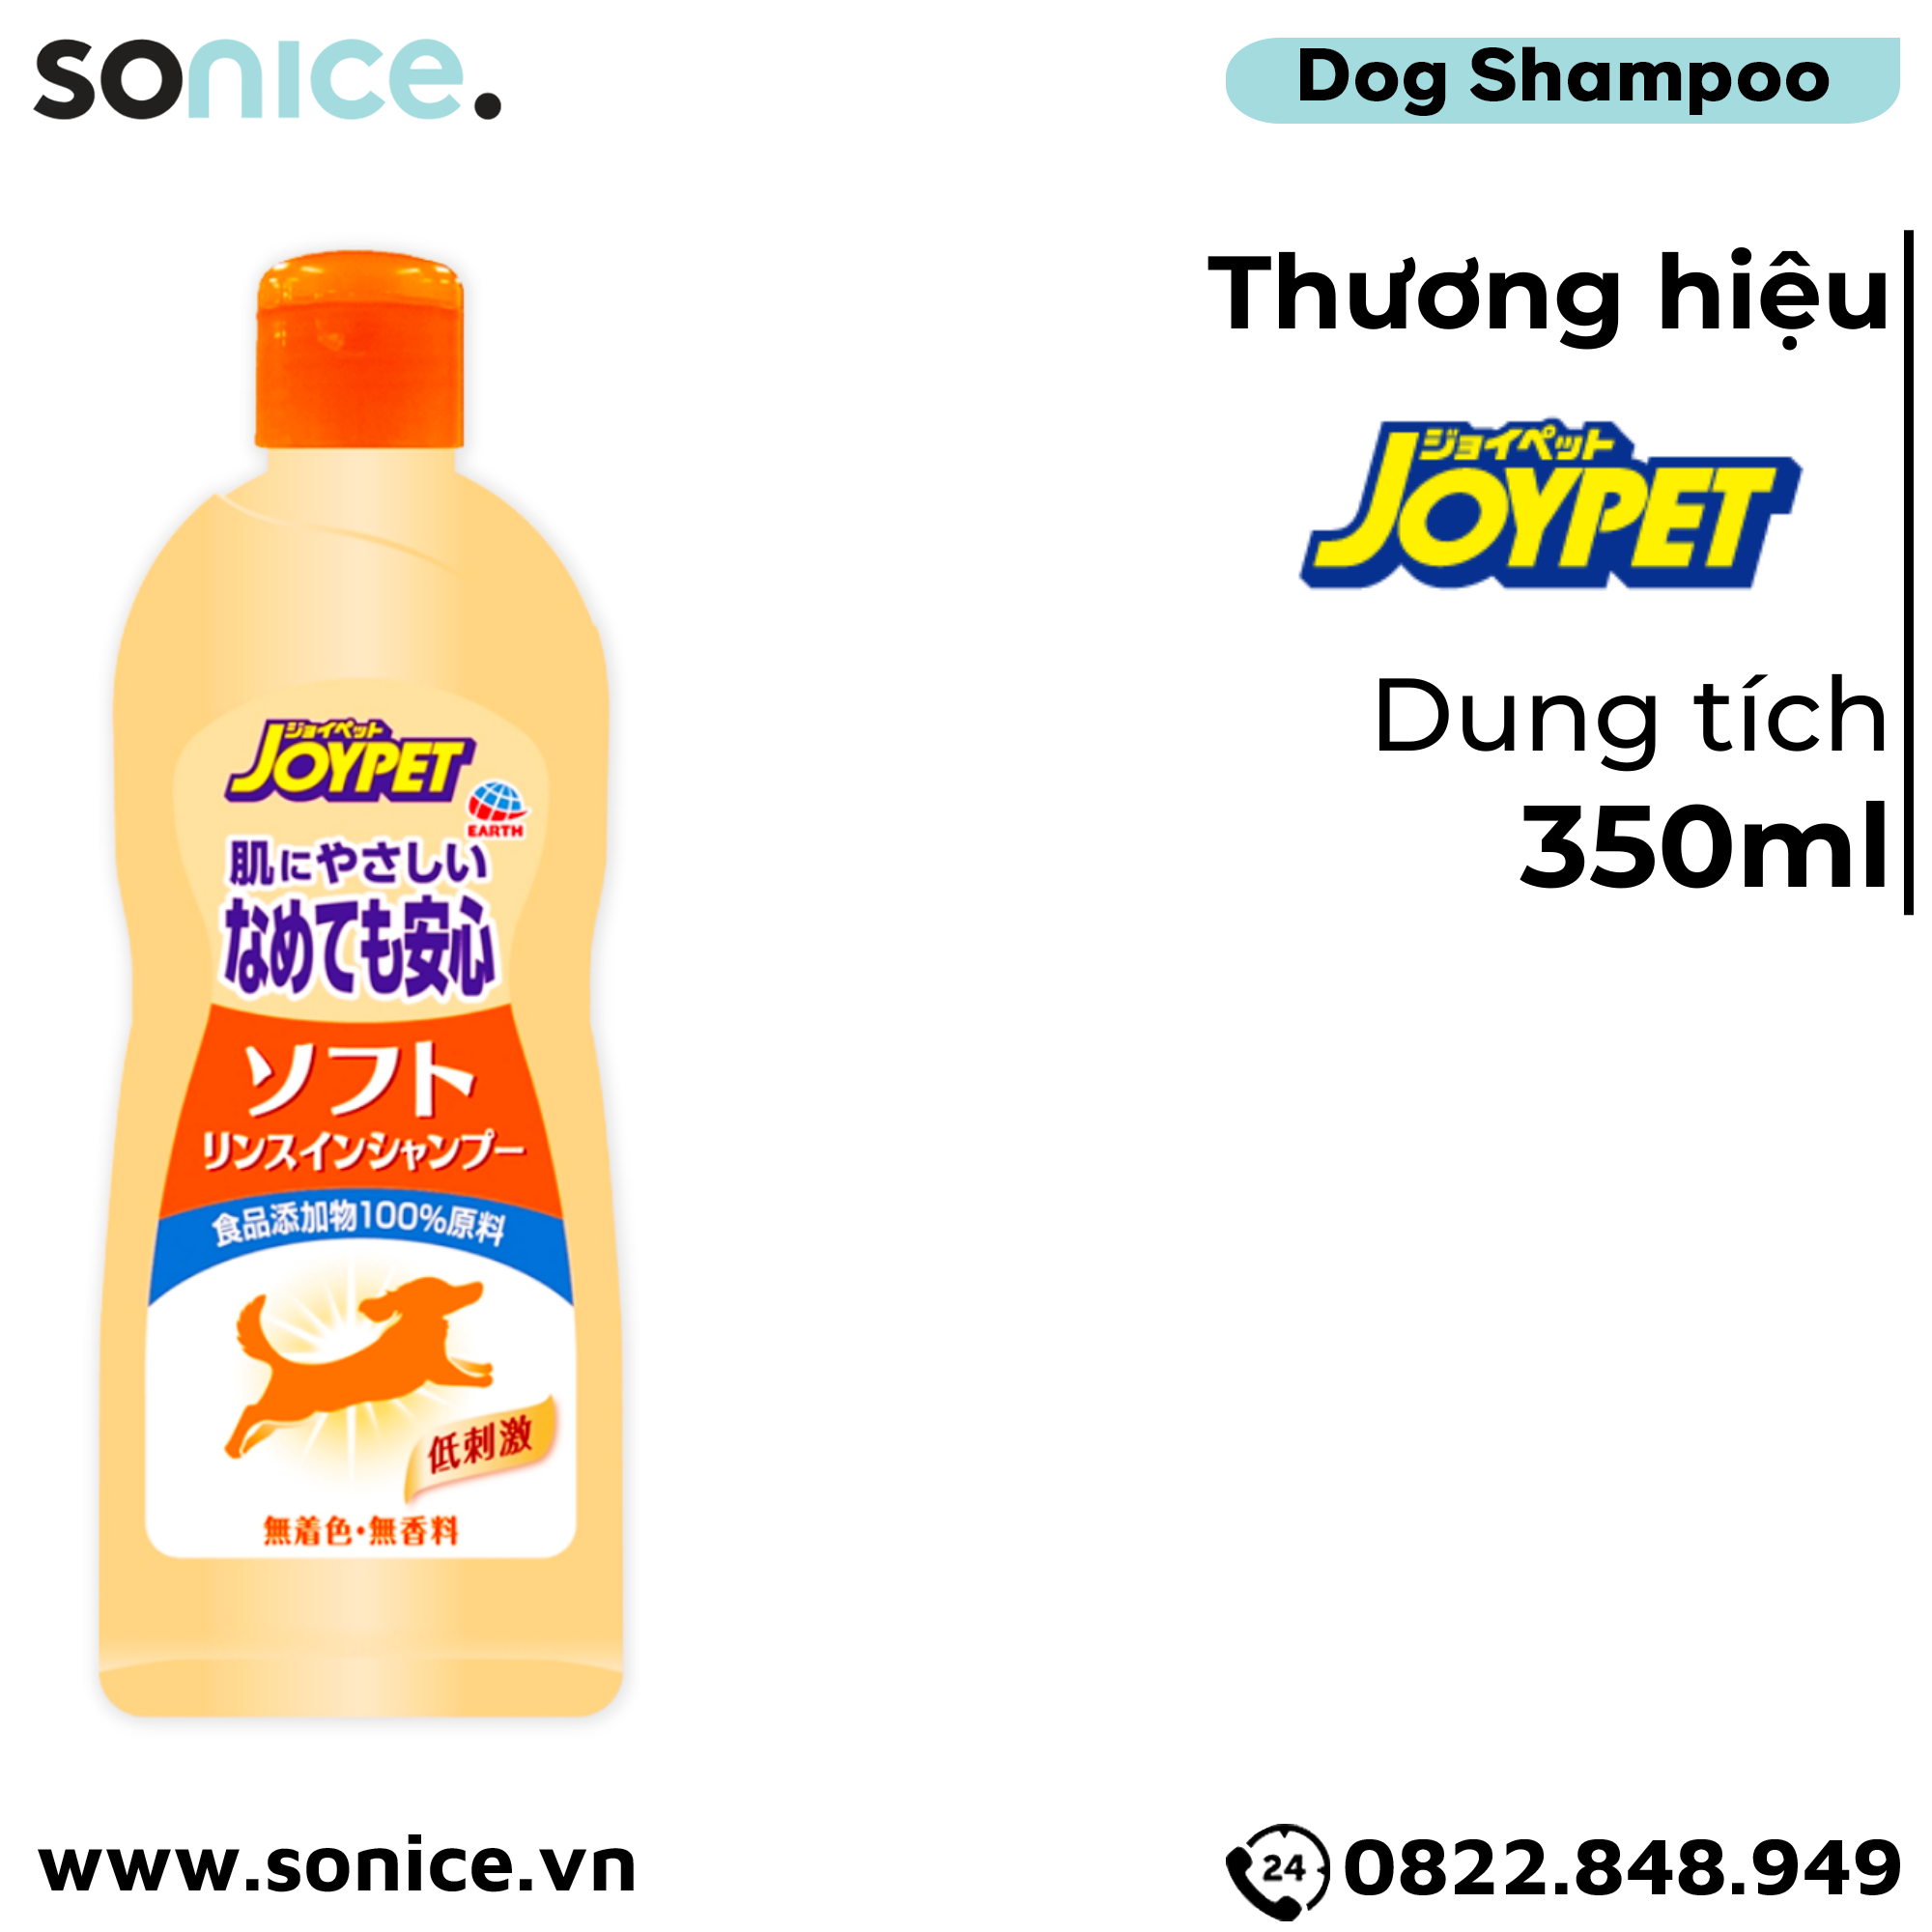  Sữa tắm Joy Johnson Soft 2in1 Shampoo for Dogs 350ml - Dành riêng cho chó con và chó già, Nhật Bản - SONICE. 